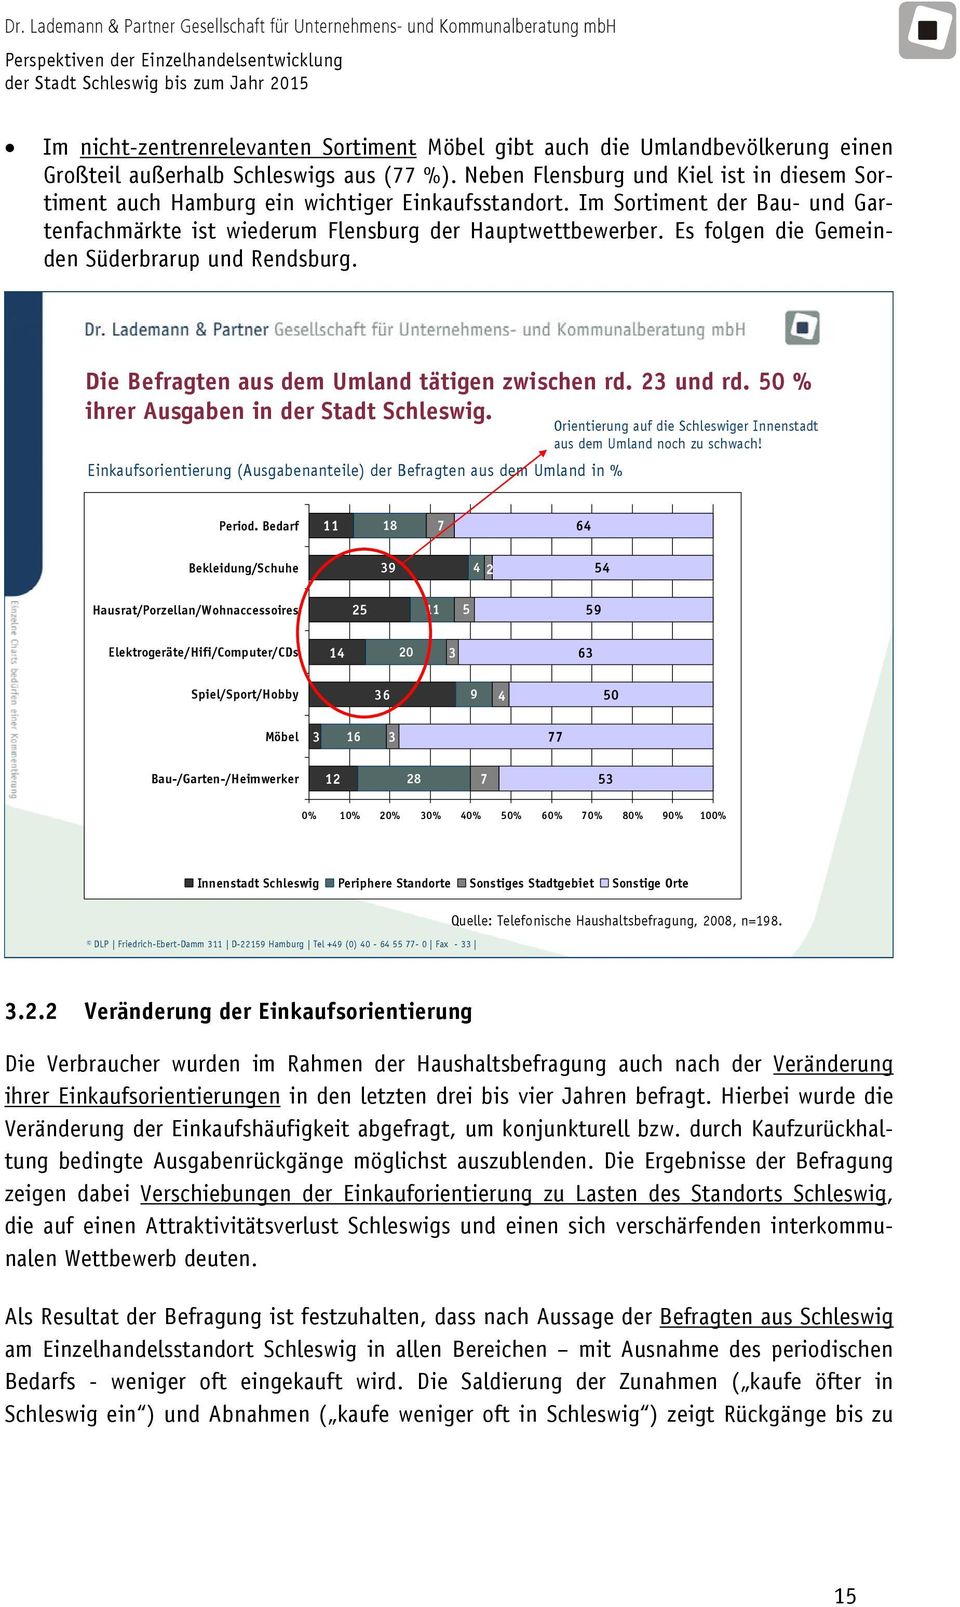 Es folgen die Gemeinden Süderbrarup und Rendsburg. Die Befragten aus dem Umland tätigen zwischen rd. 23 und rd. 50 % ihrer Ausgaben in der Stadt Schleswig.